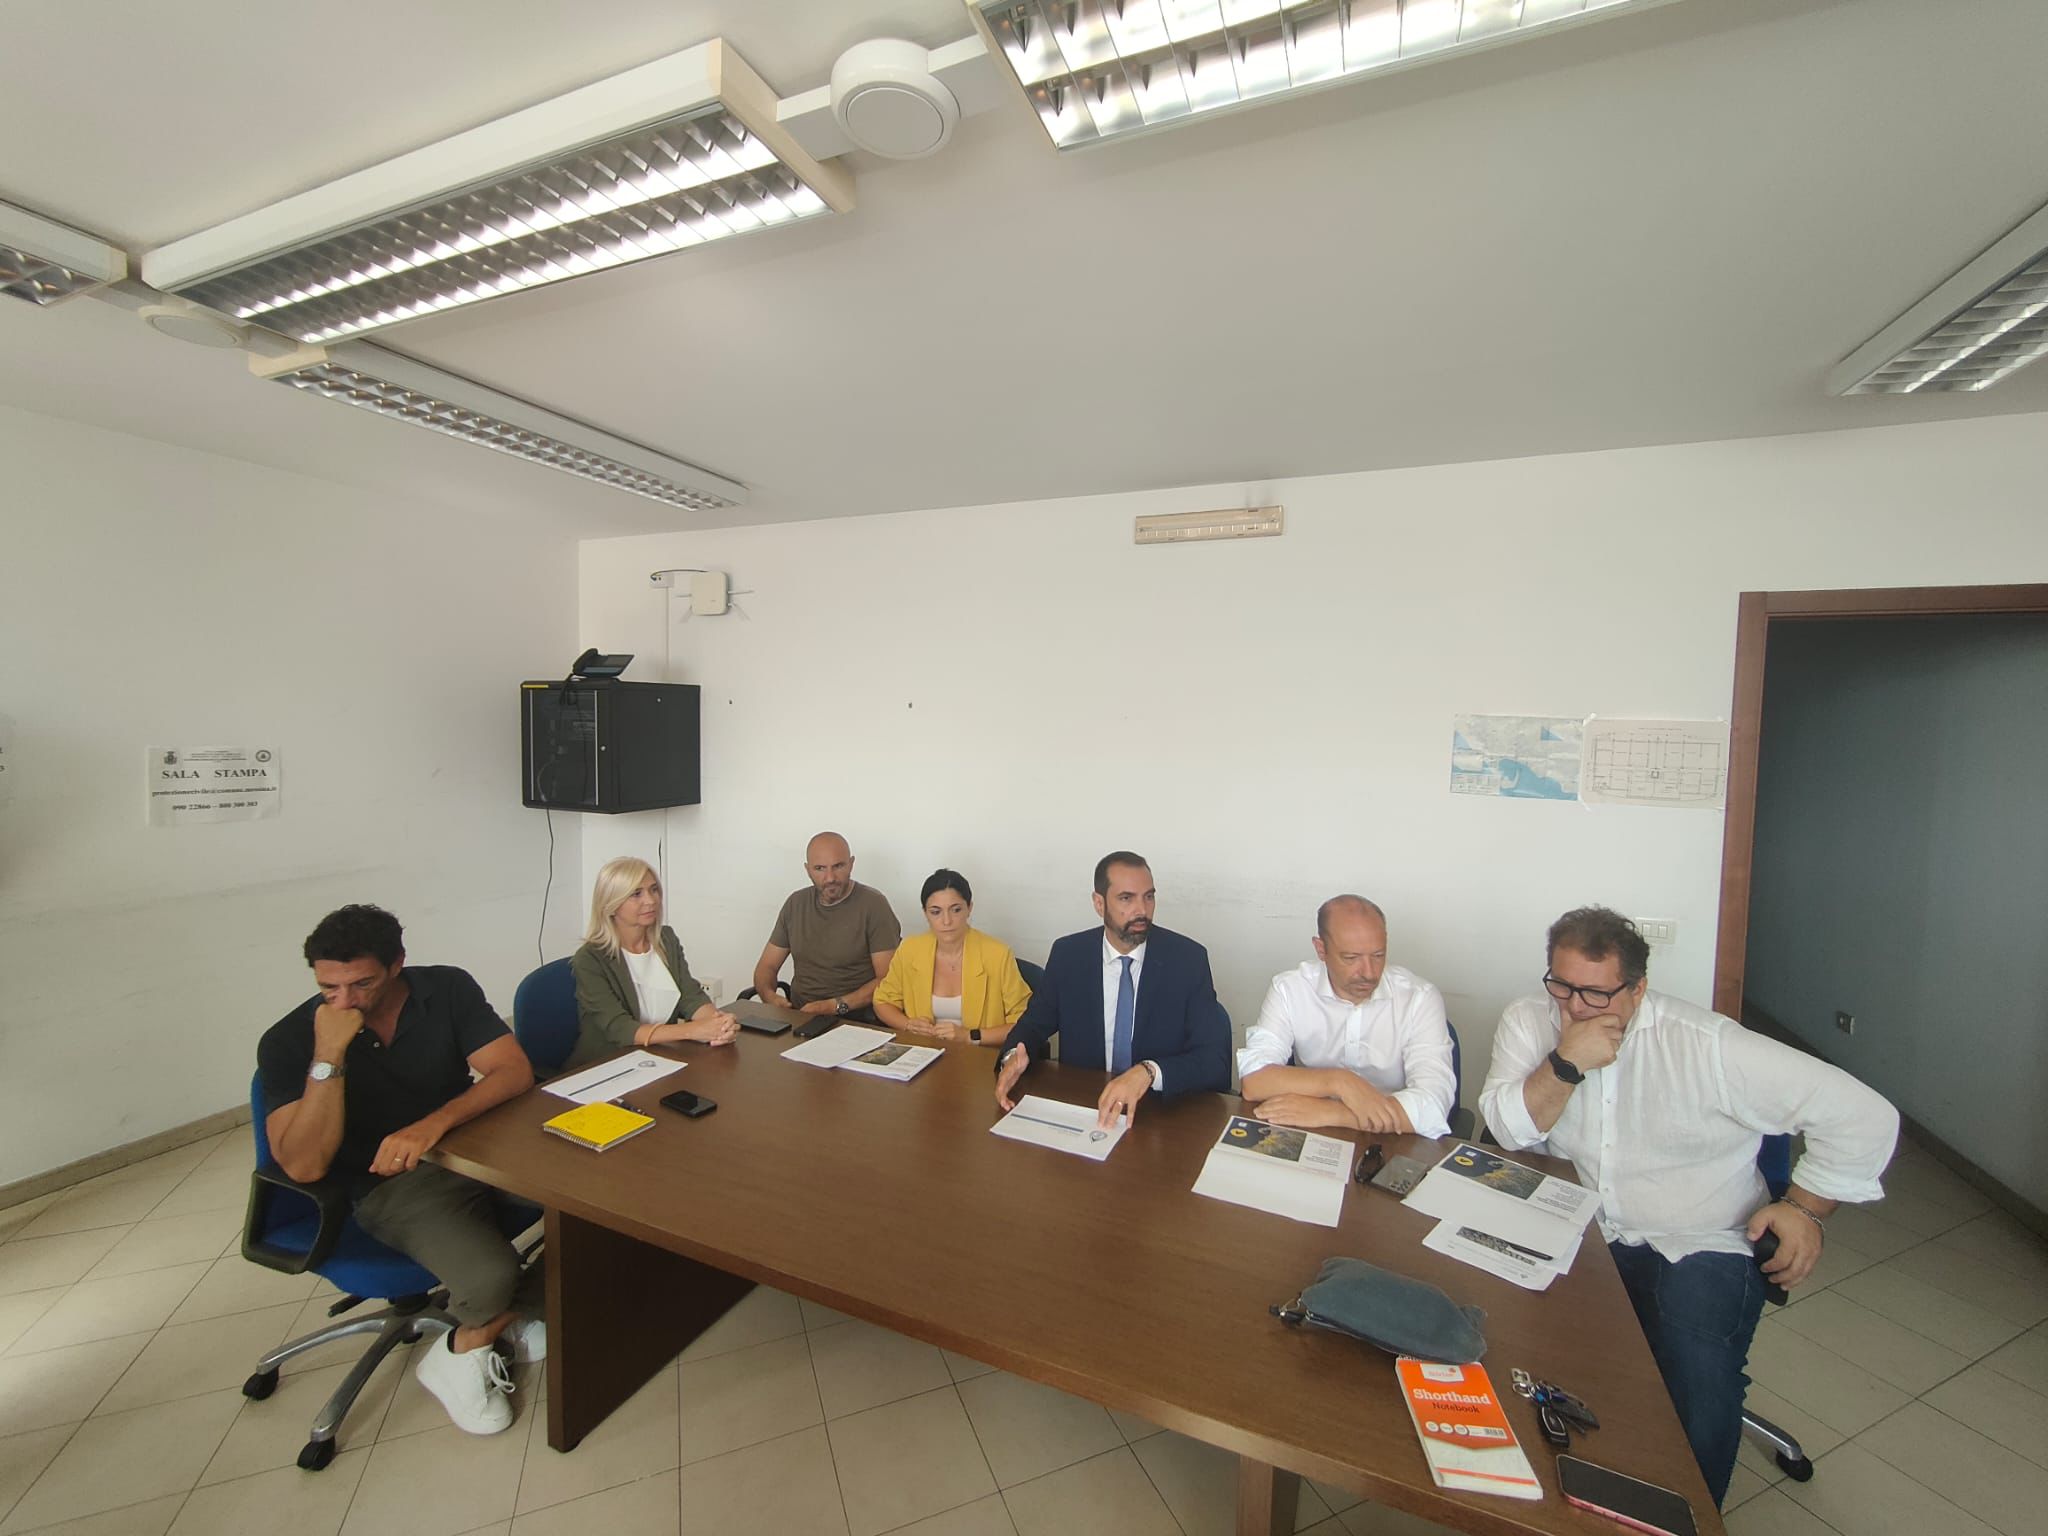 Lotta alla crisi idrica: l'Amministrazione comunale di Messina adotta un piano di distribuzione controllata